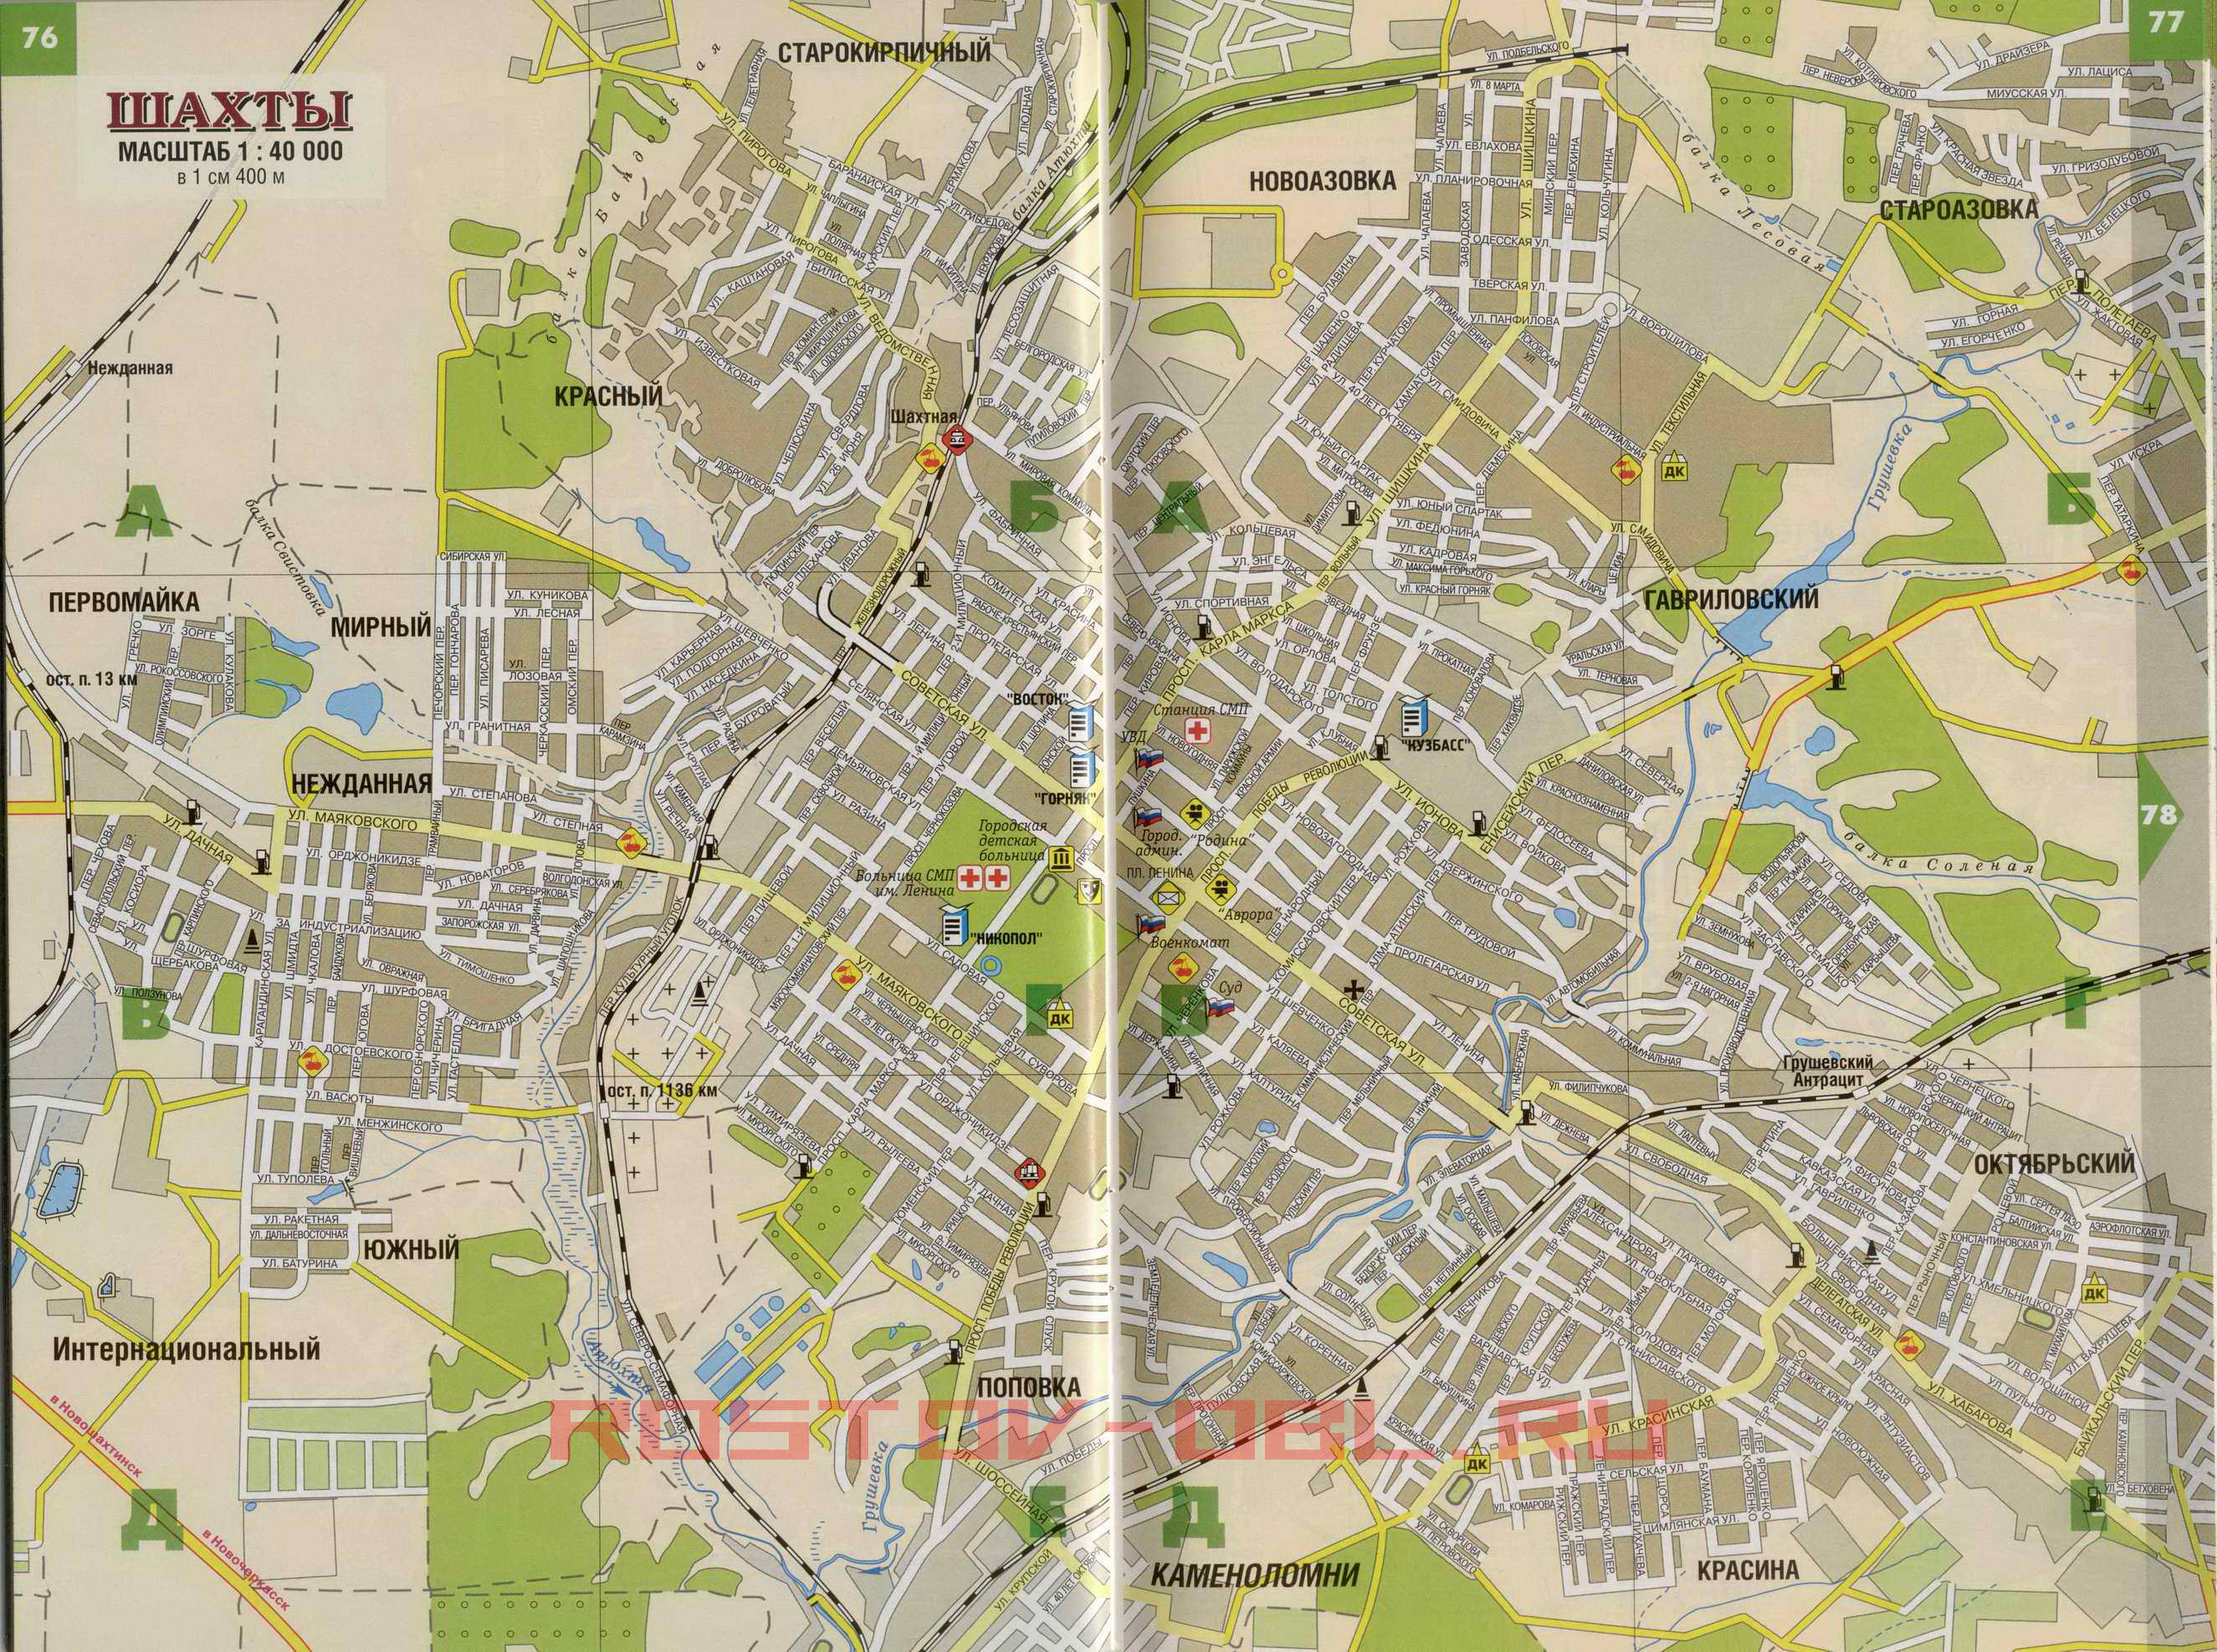 Автомобильная карта города Шахты. Карта улиц г шахты с номерами домов, A0 - 